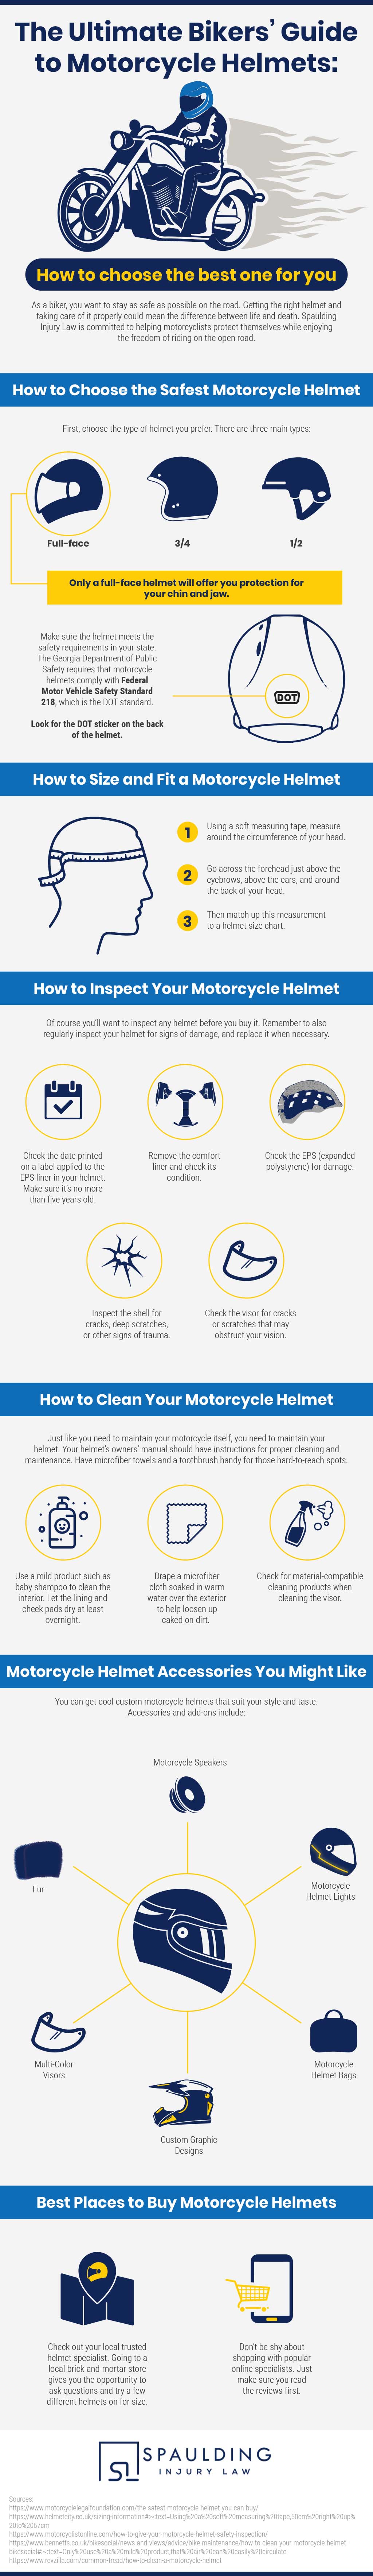 Ultimate Bikers’ Guide to Motorcycle Helmets